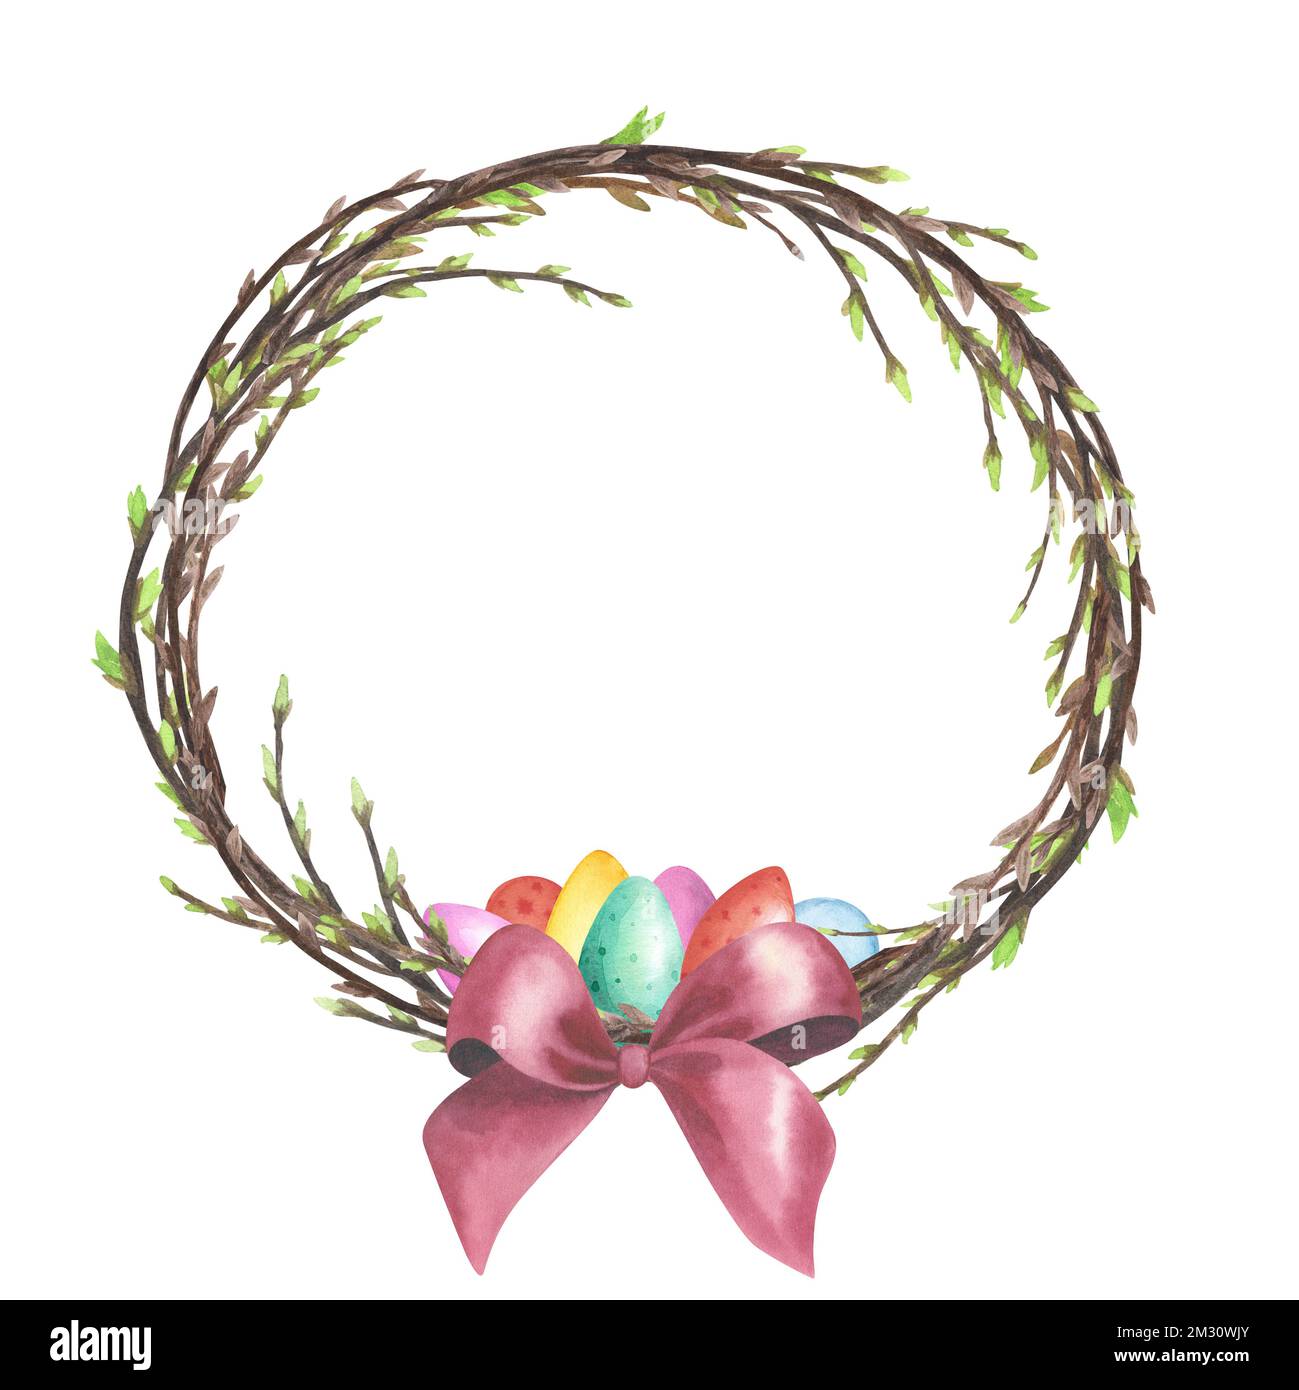 Willow-Kranz-Aquarell mit Frühlingszweigen, farbigen Eiern, roter Schleife isoliert auf weißem Hintergrund. Handgemalte Osterzeichnung als Einladung Stockfoto